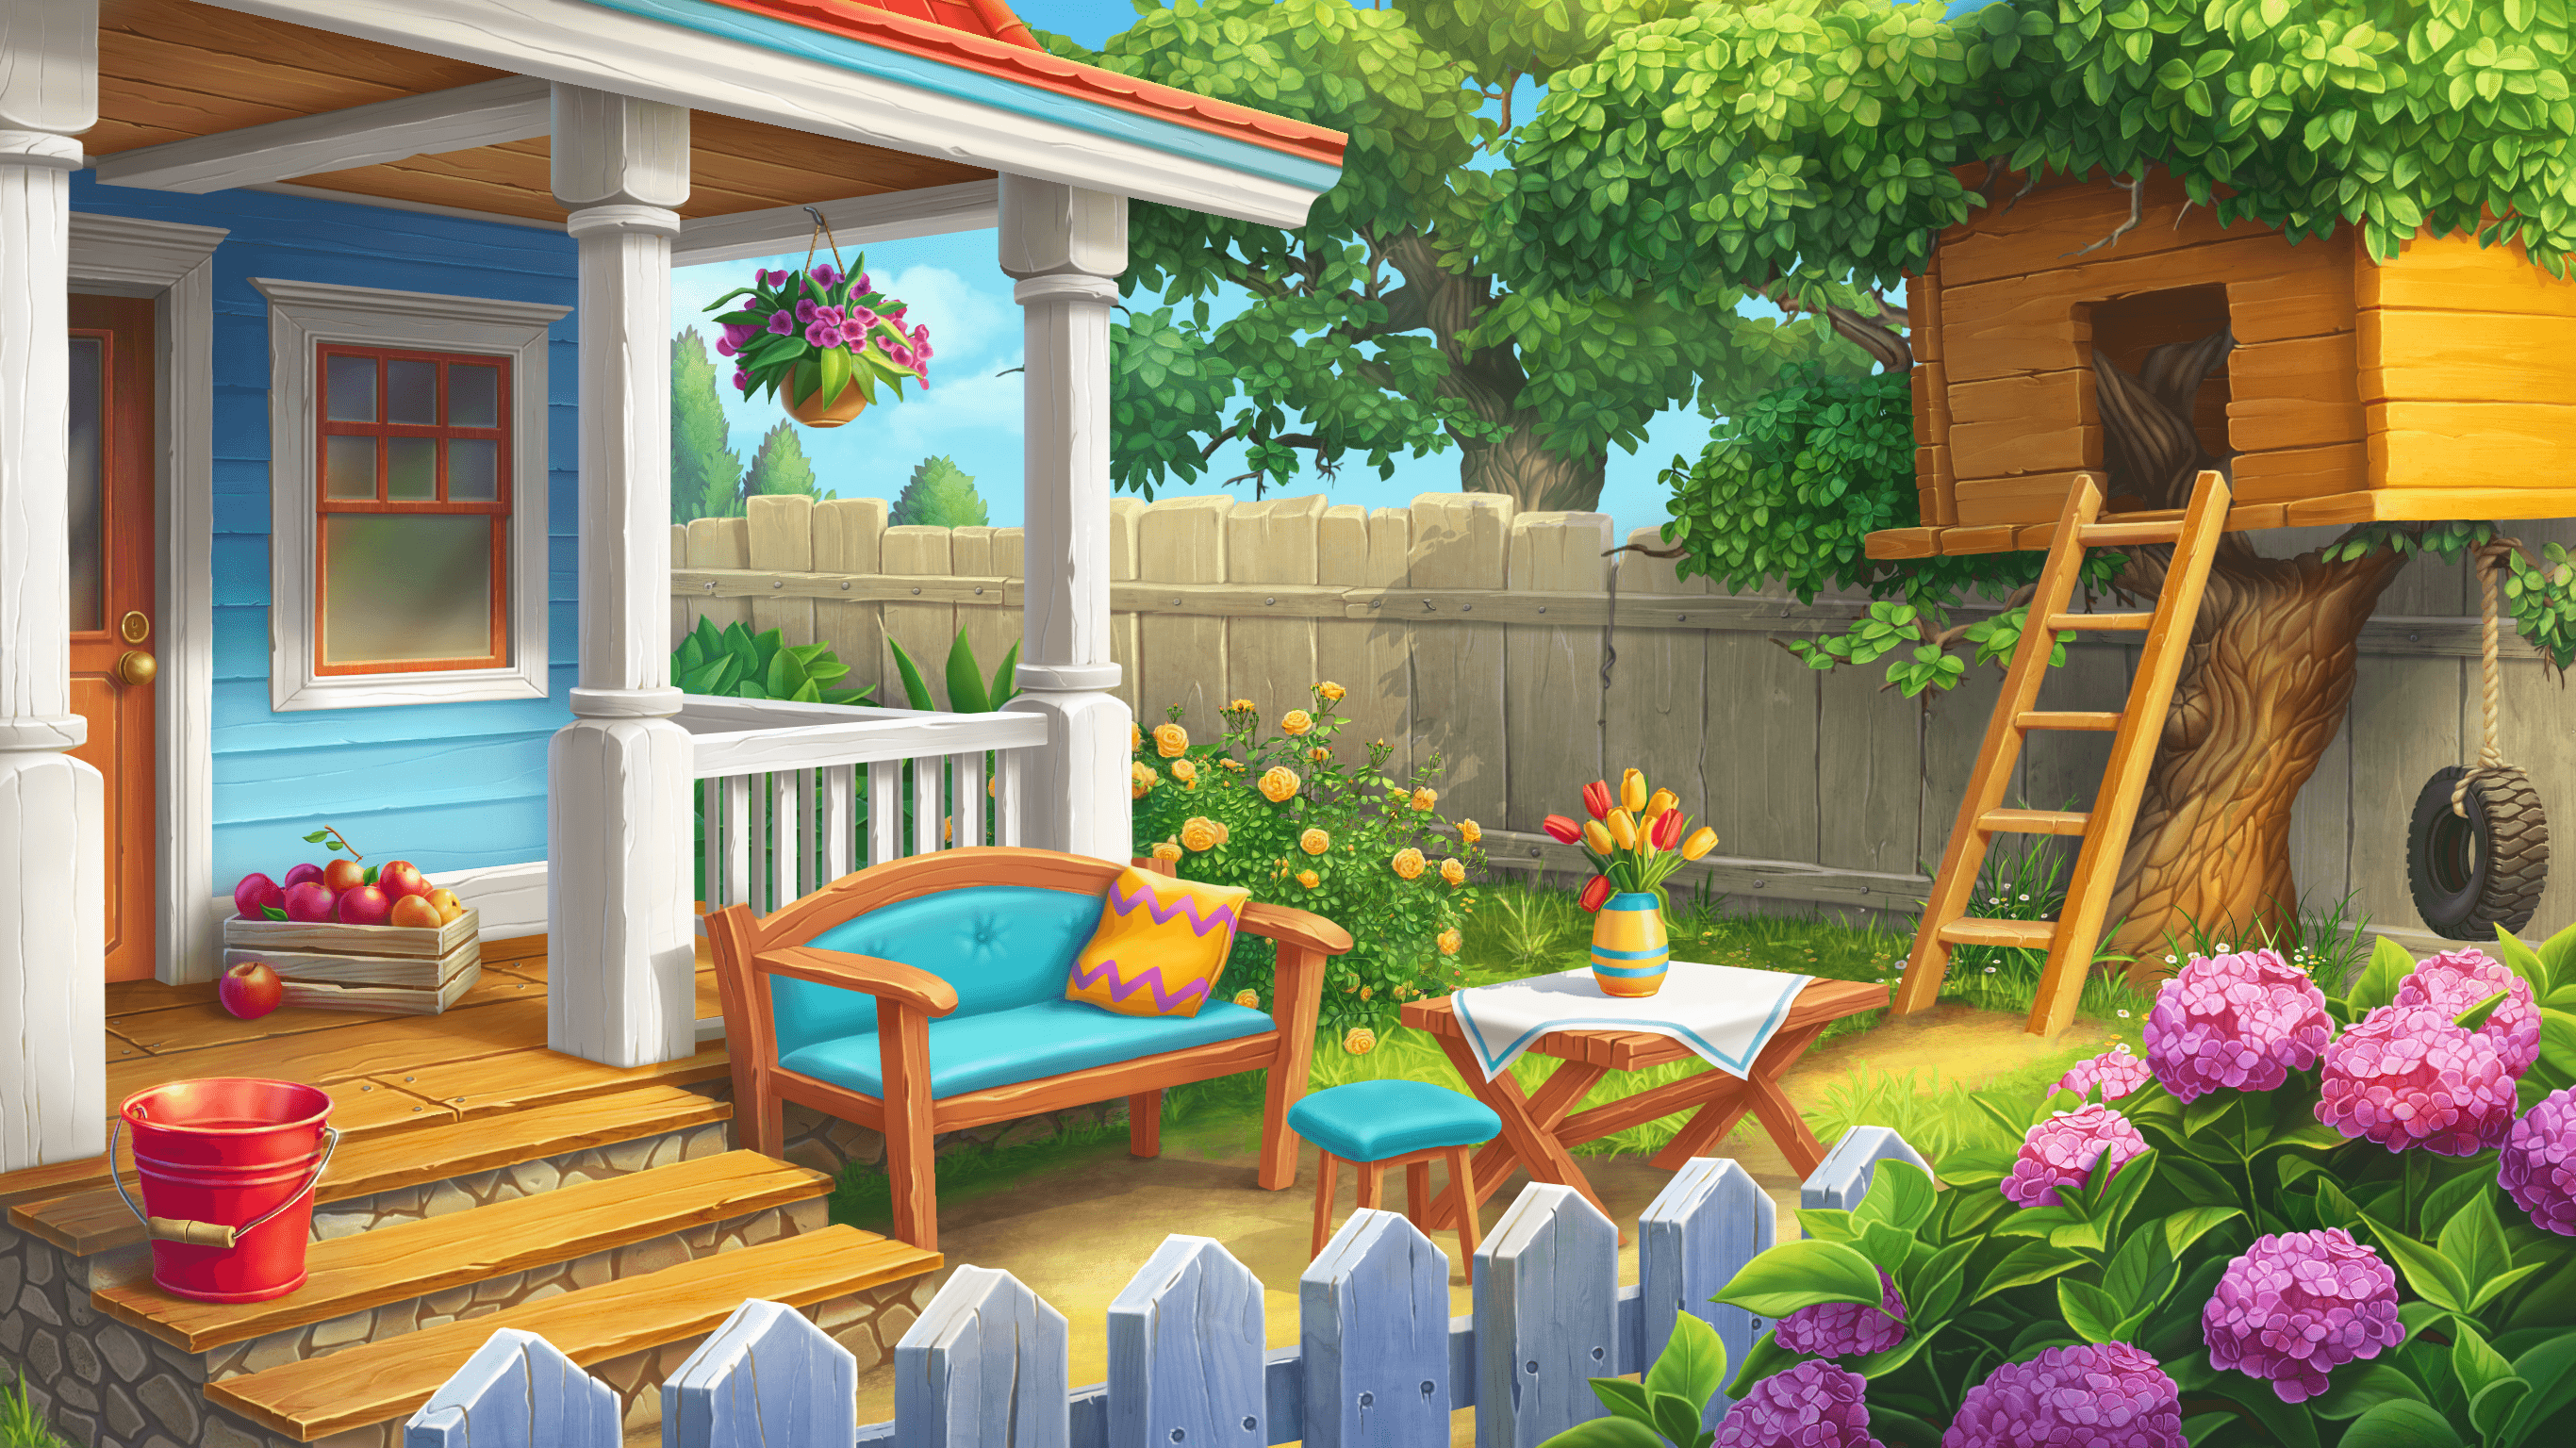 Relaxing Backyard